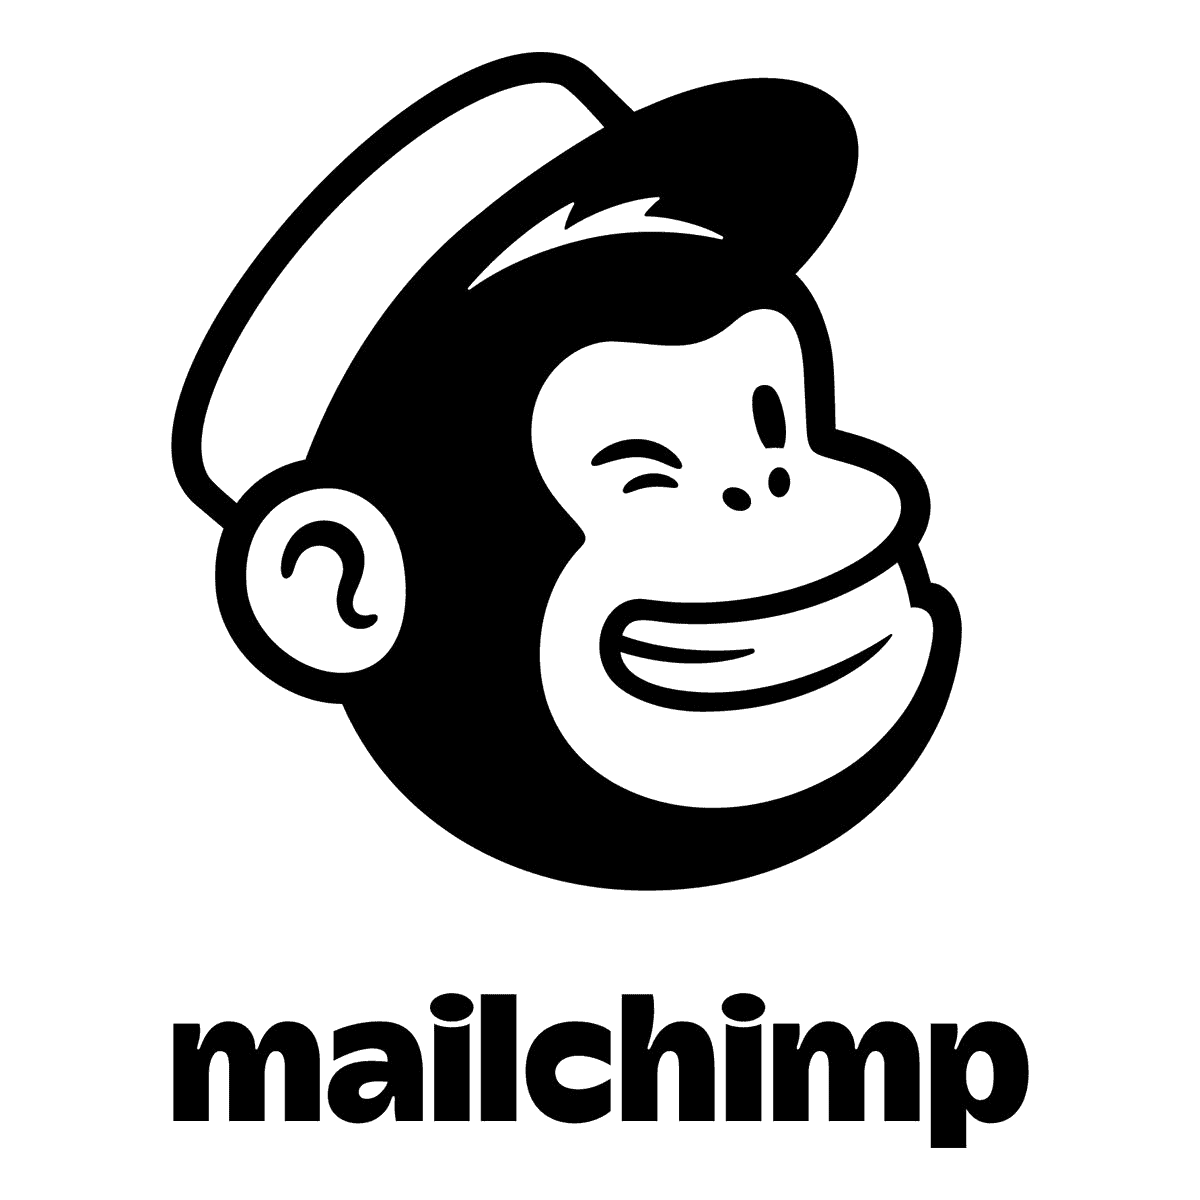 Mailchimp_logo